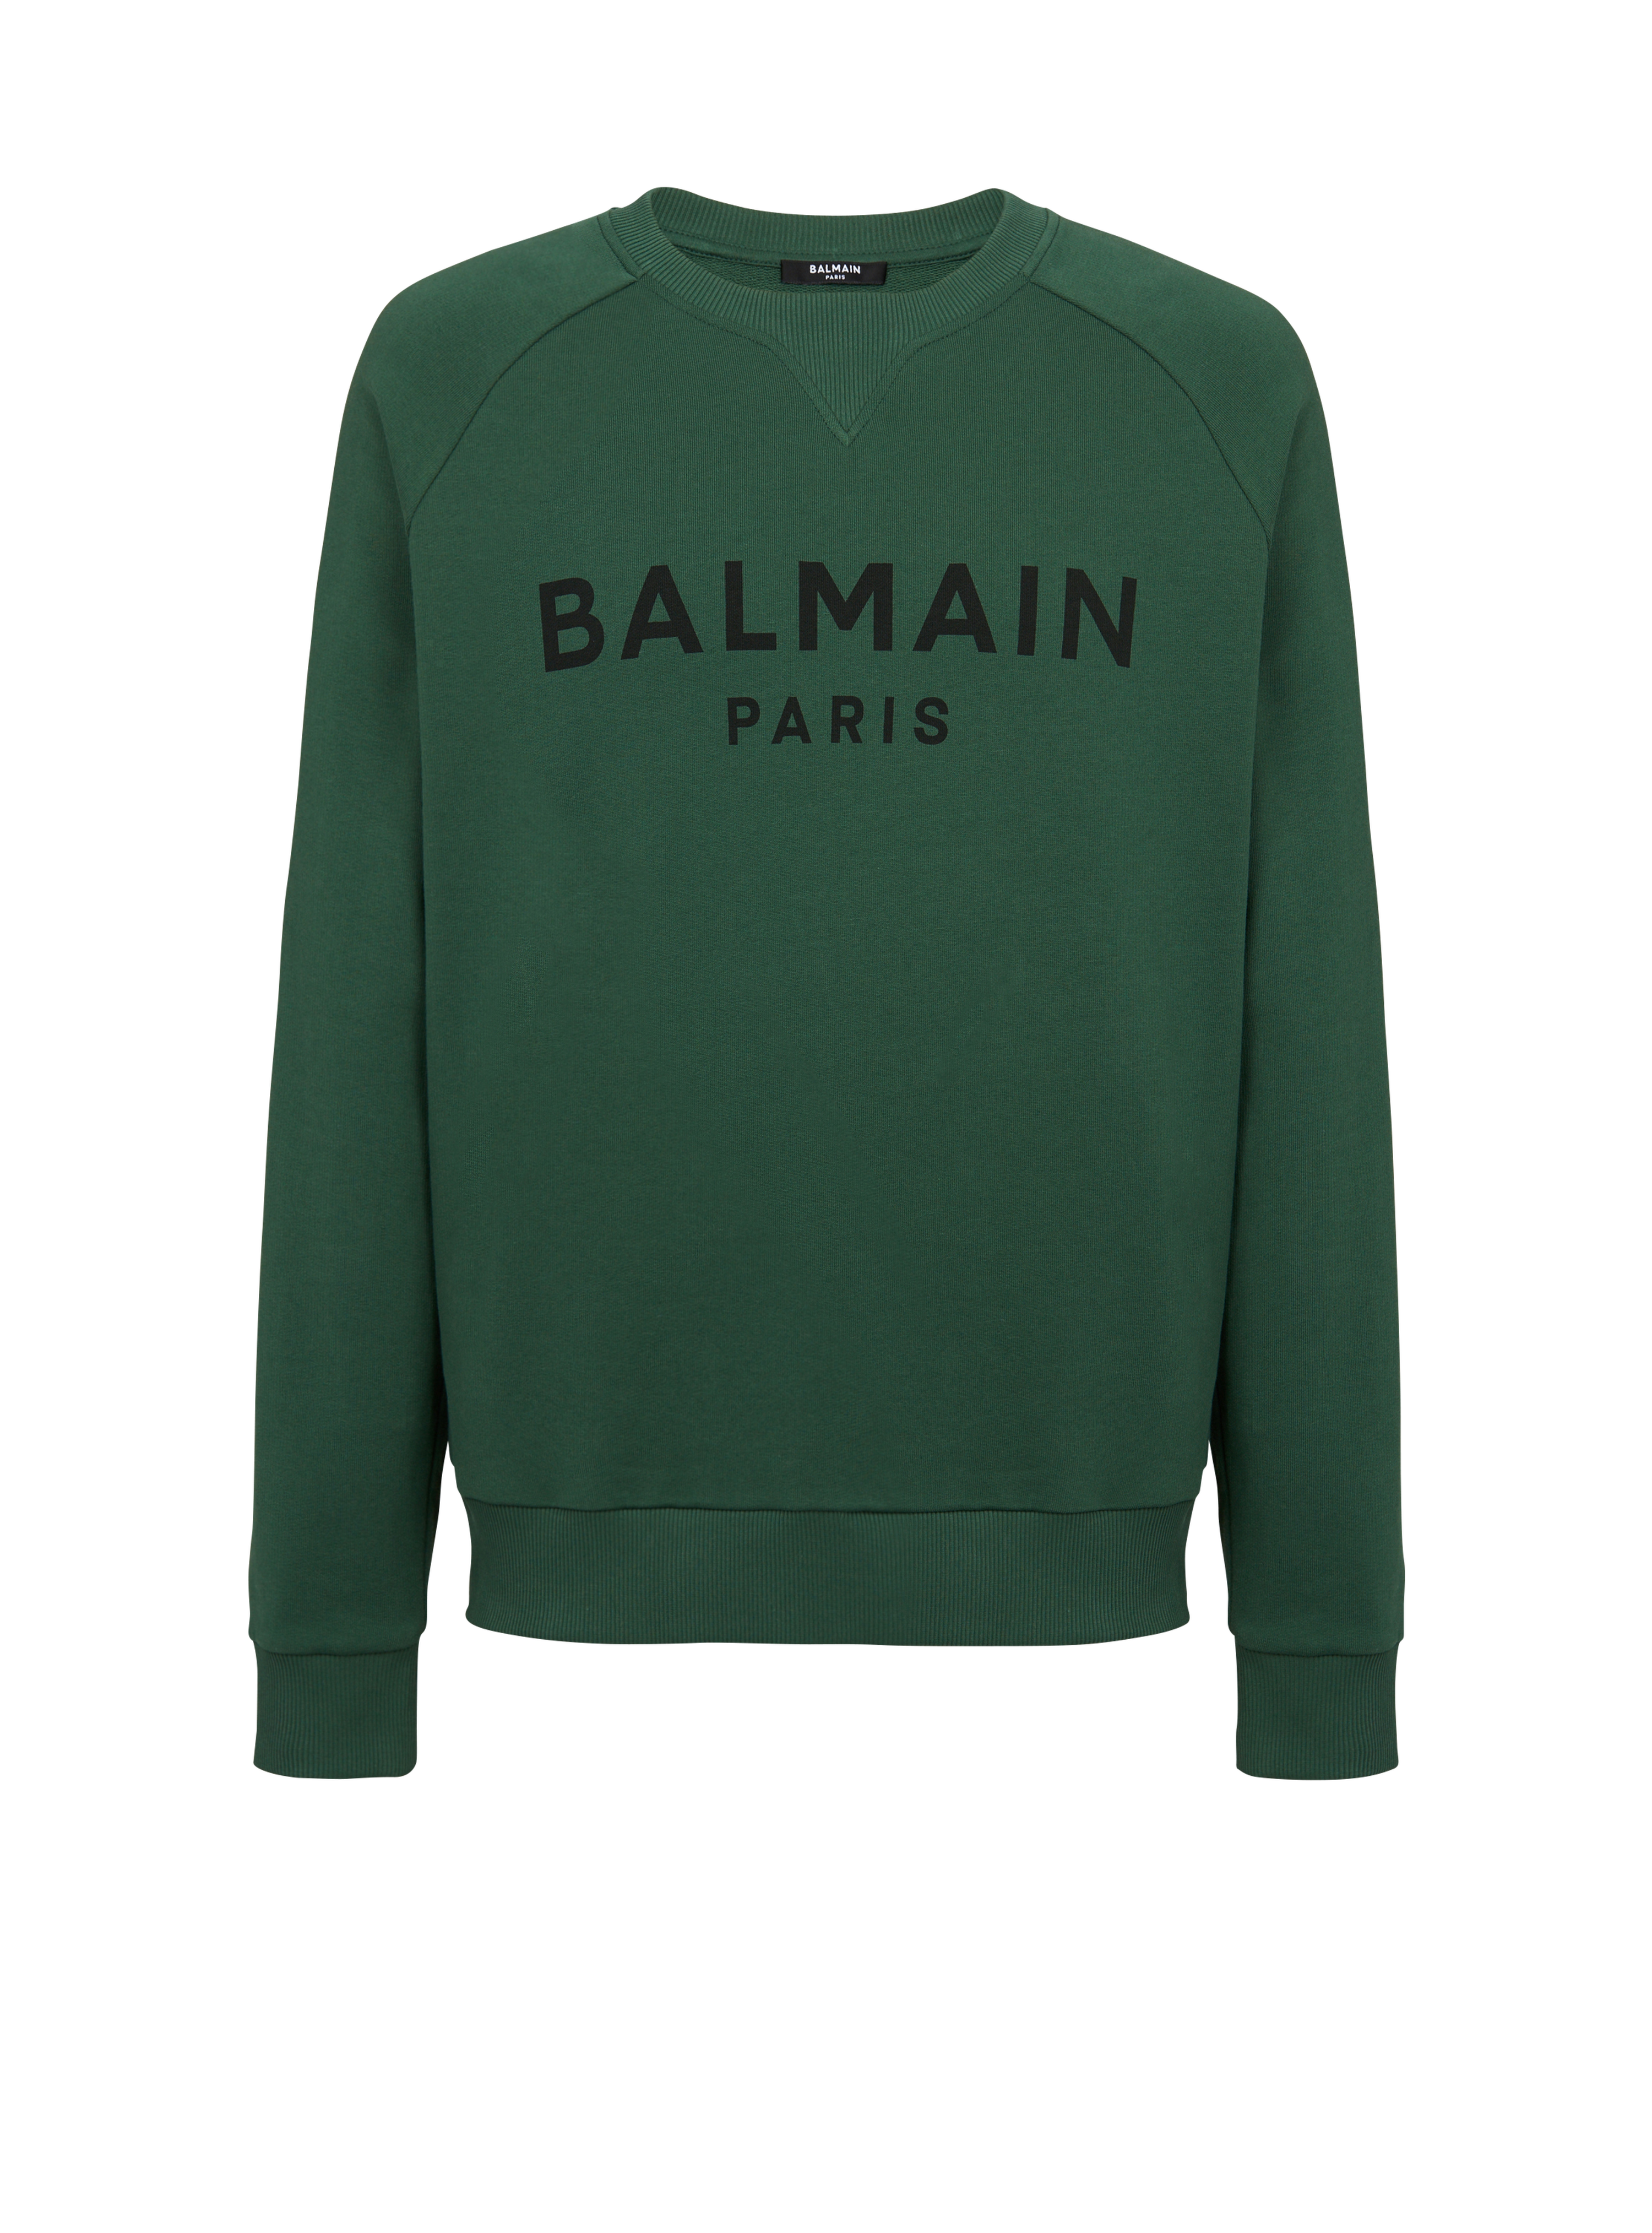 블랙 Balmain Paris 로고 프린트 디테일 코튼 스웻셔츠, 녹색